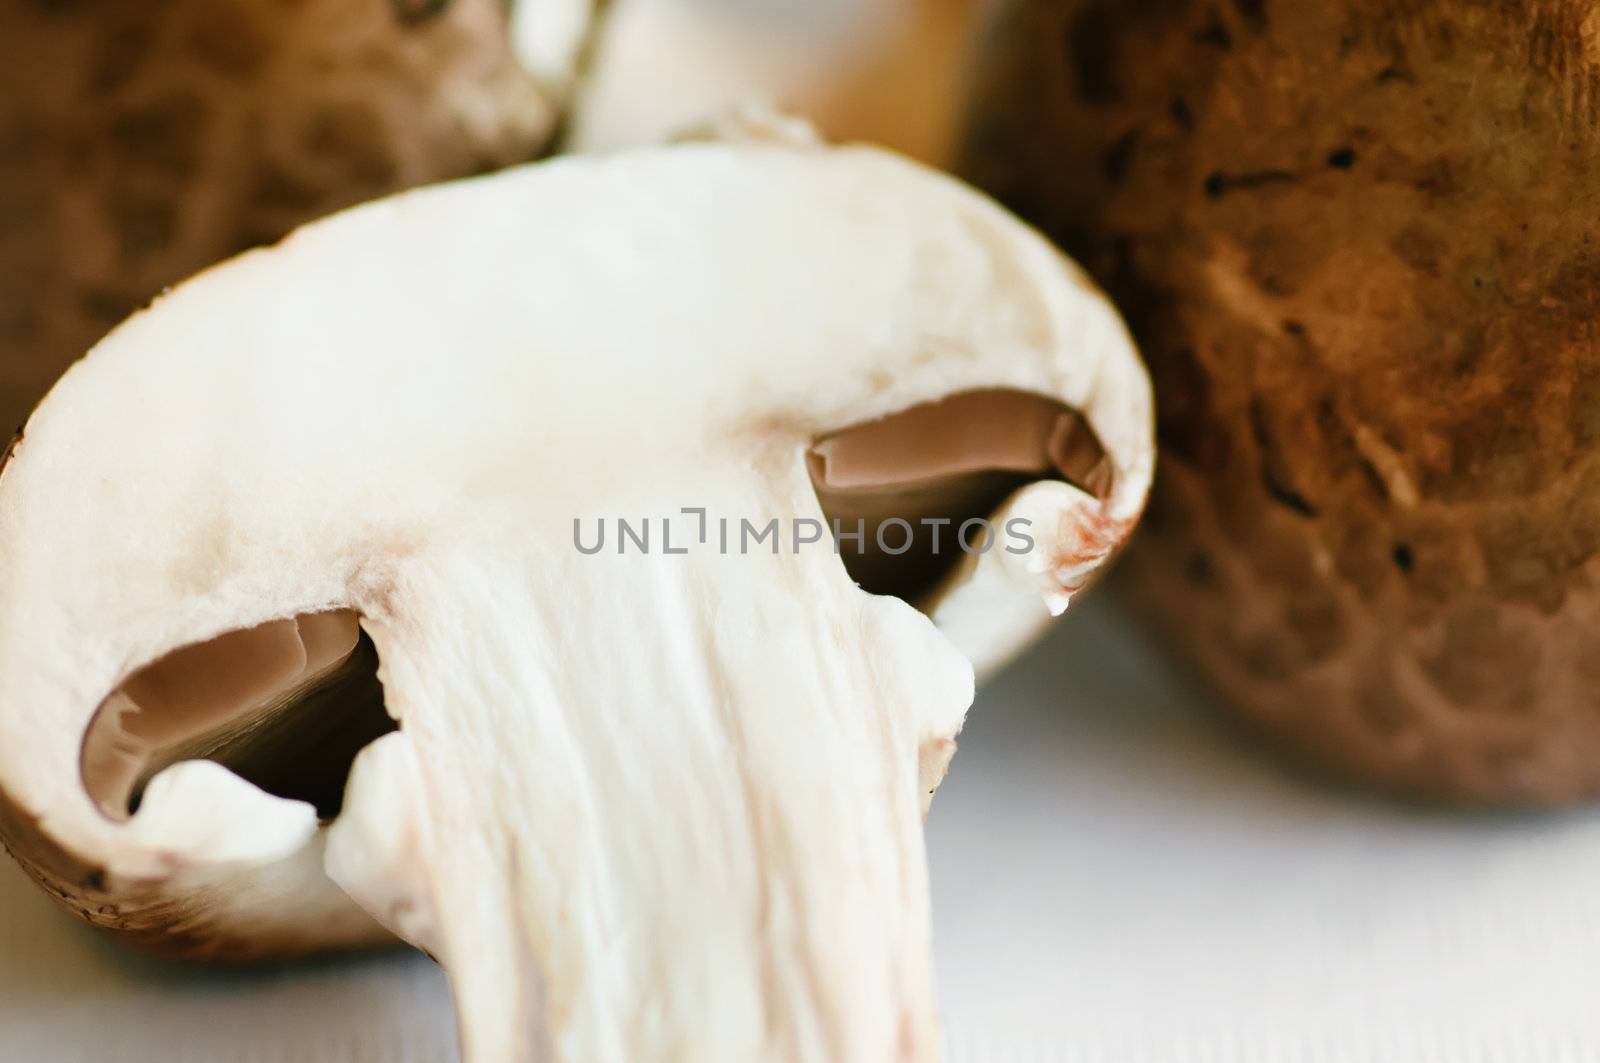 mushrooms (champignons) by shivanetua